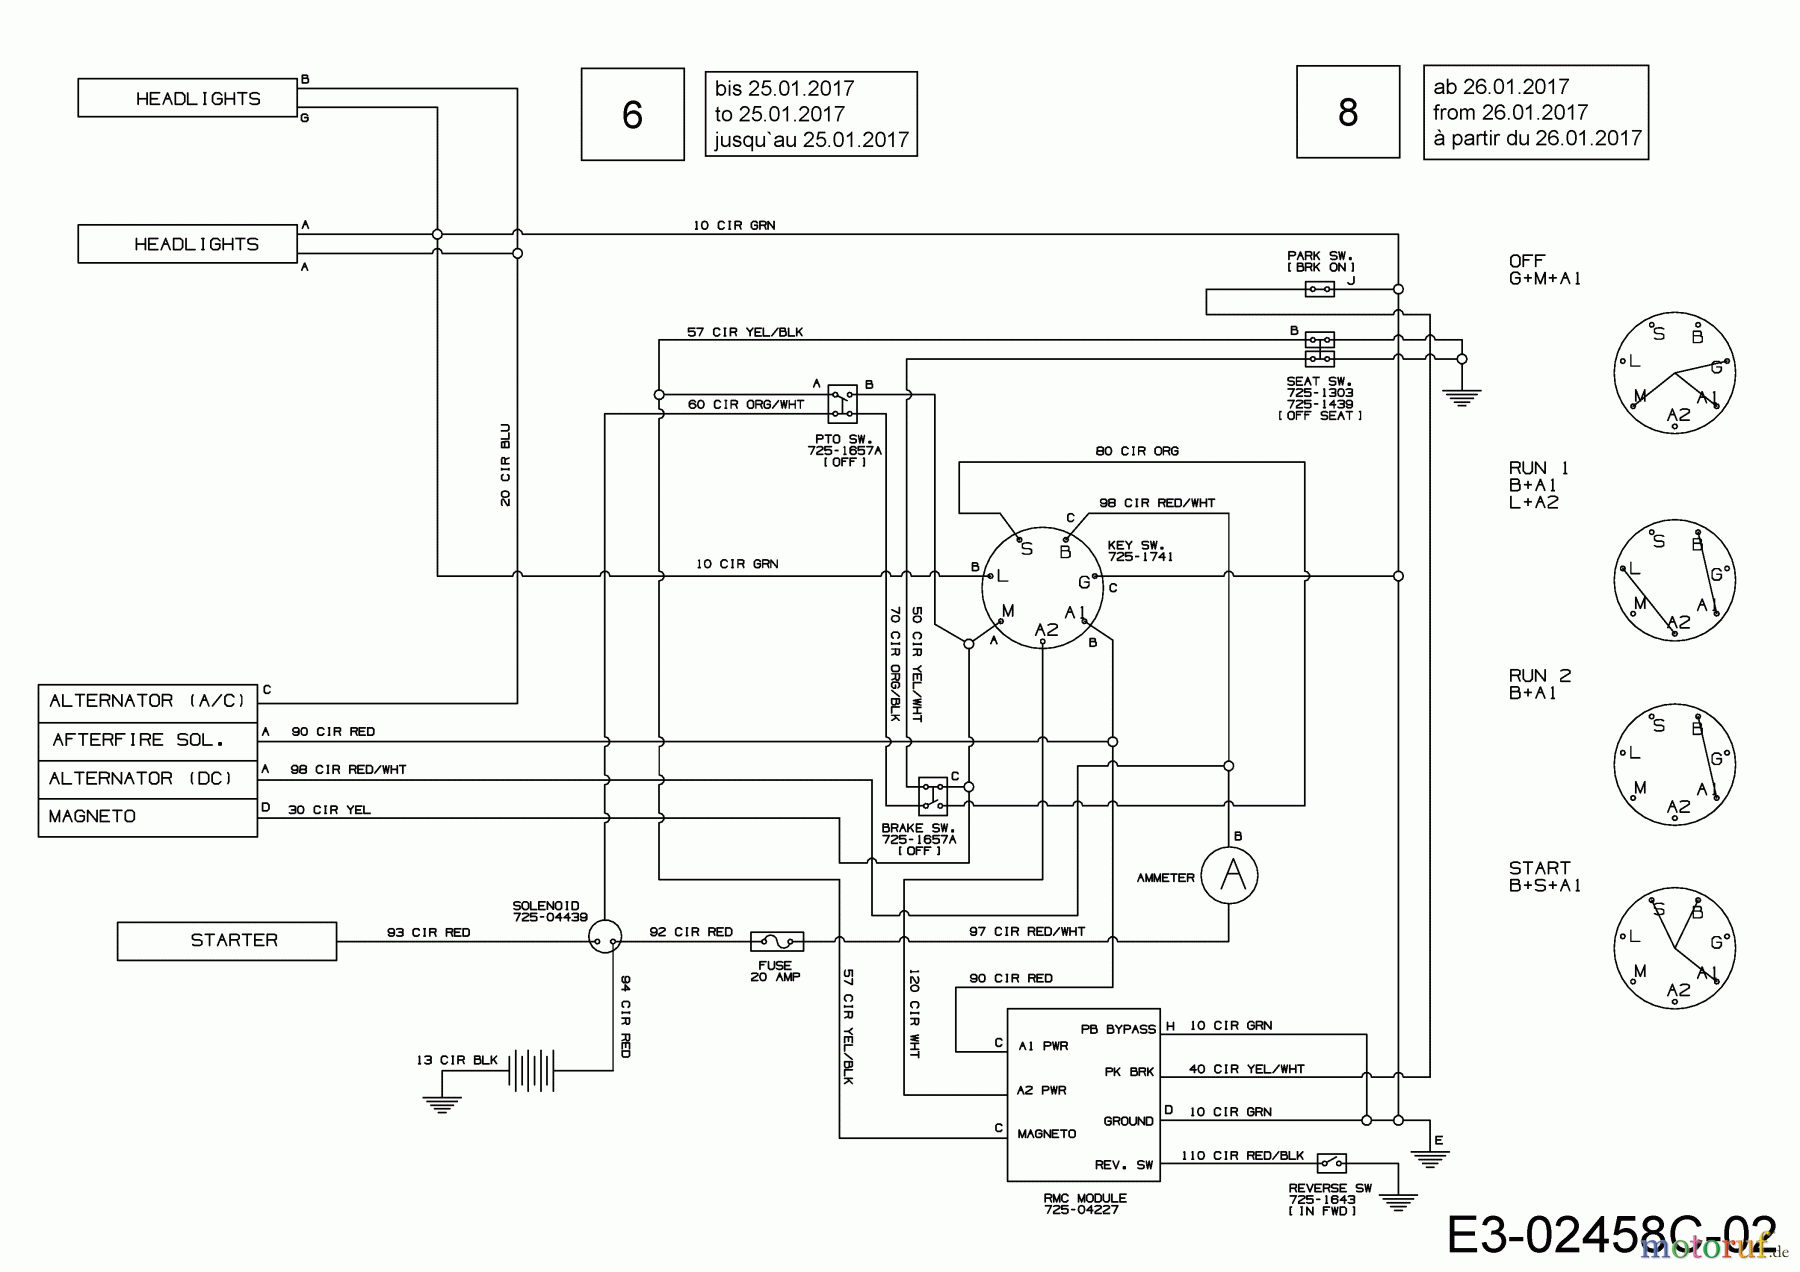  MTD Lawn tractors 20/42 13BT77KS308  (2017) Wiring diagram